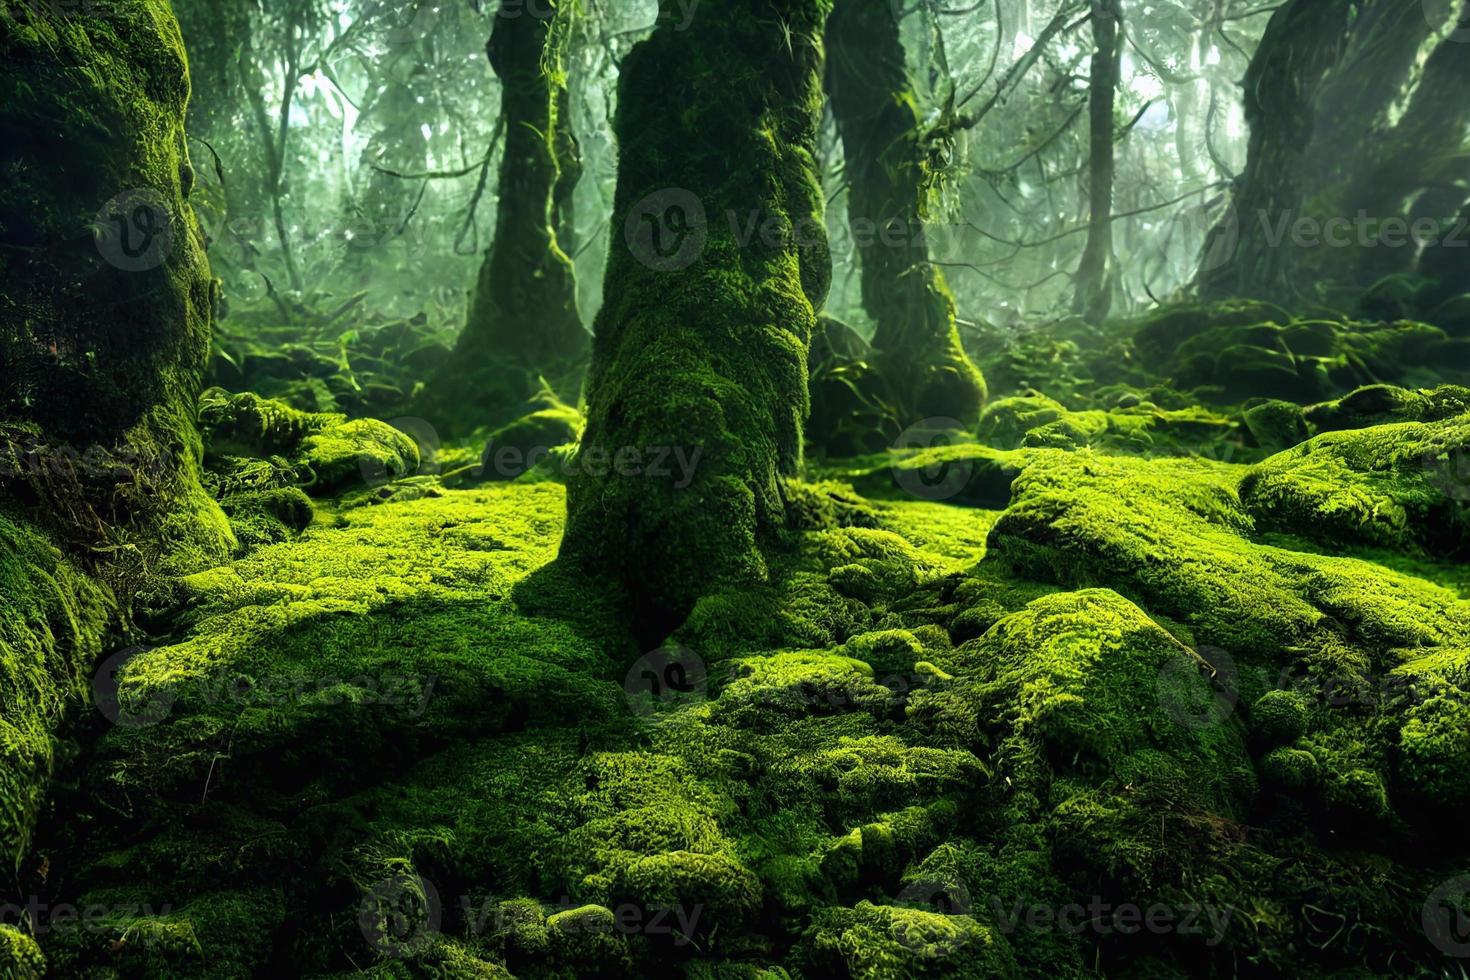 uma ilustração gerada por computador de musgo verde exuberante em um chão de floresta com pedras e árvores. arte gerada ai. foto